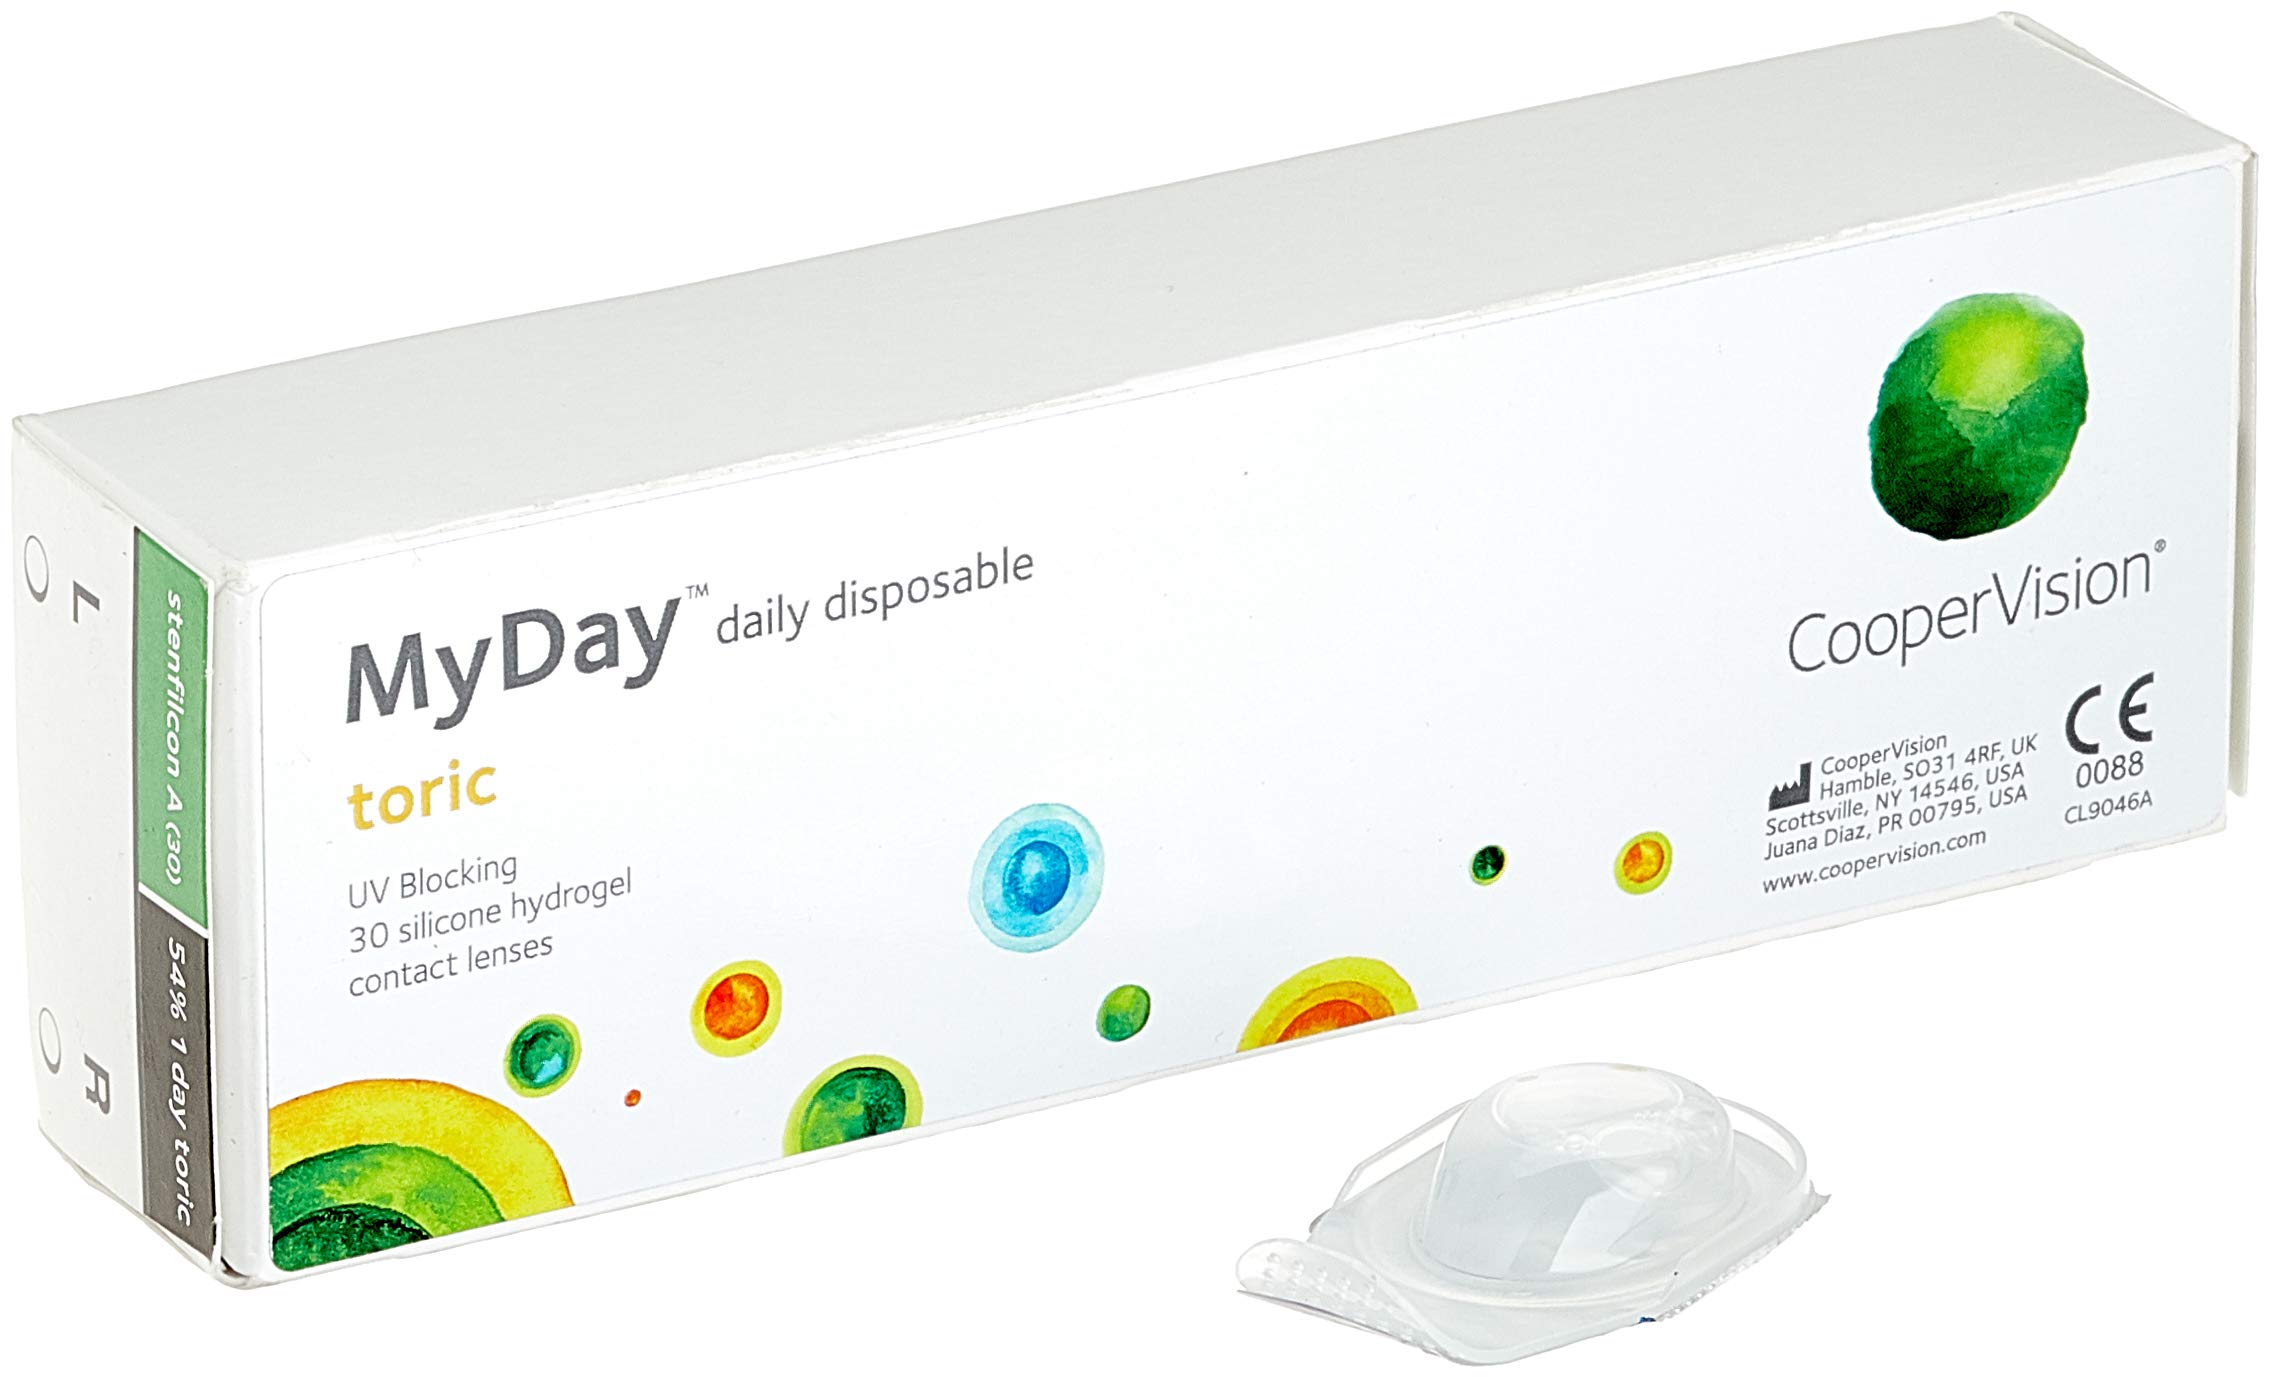 MYDAY Daily disposable Torisch Tageslinsen weich, 30 Stück / BC 8.6 mm / Dia 14.5 mm / CYL -1,25 / ACHSE 180 / 0 Dioptrien